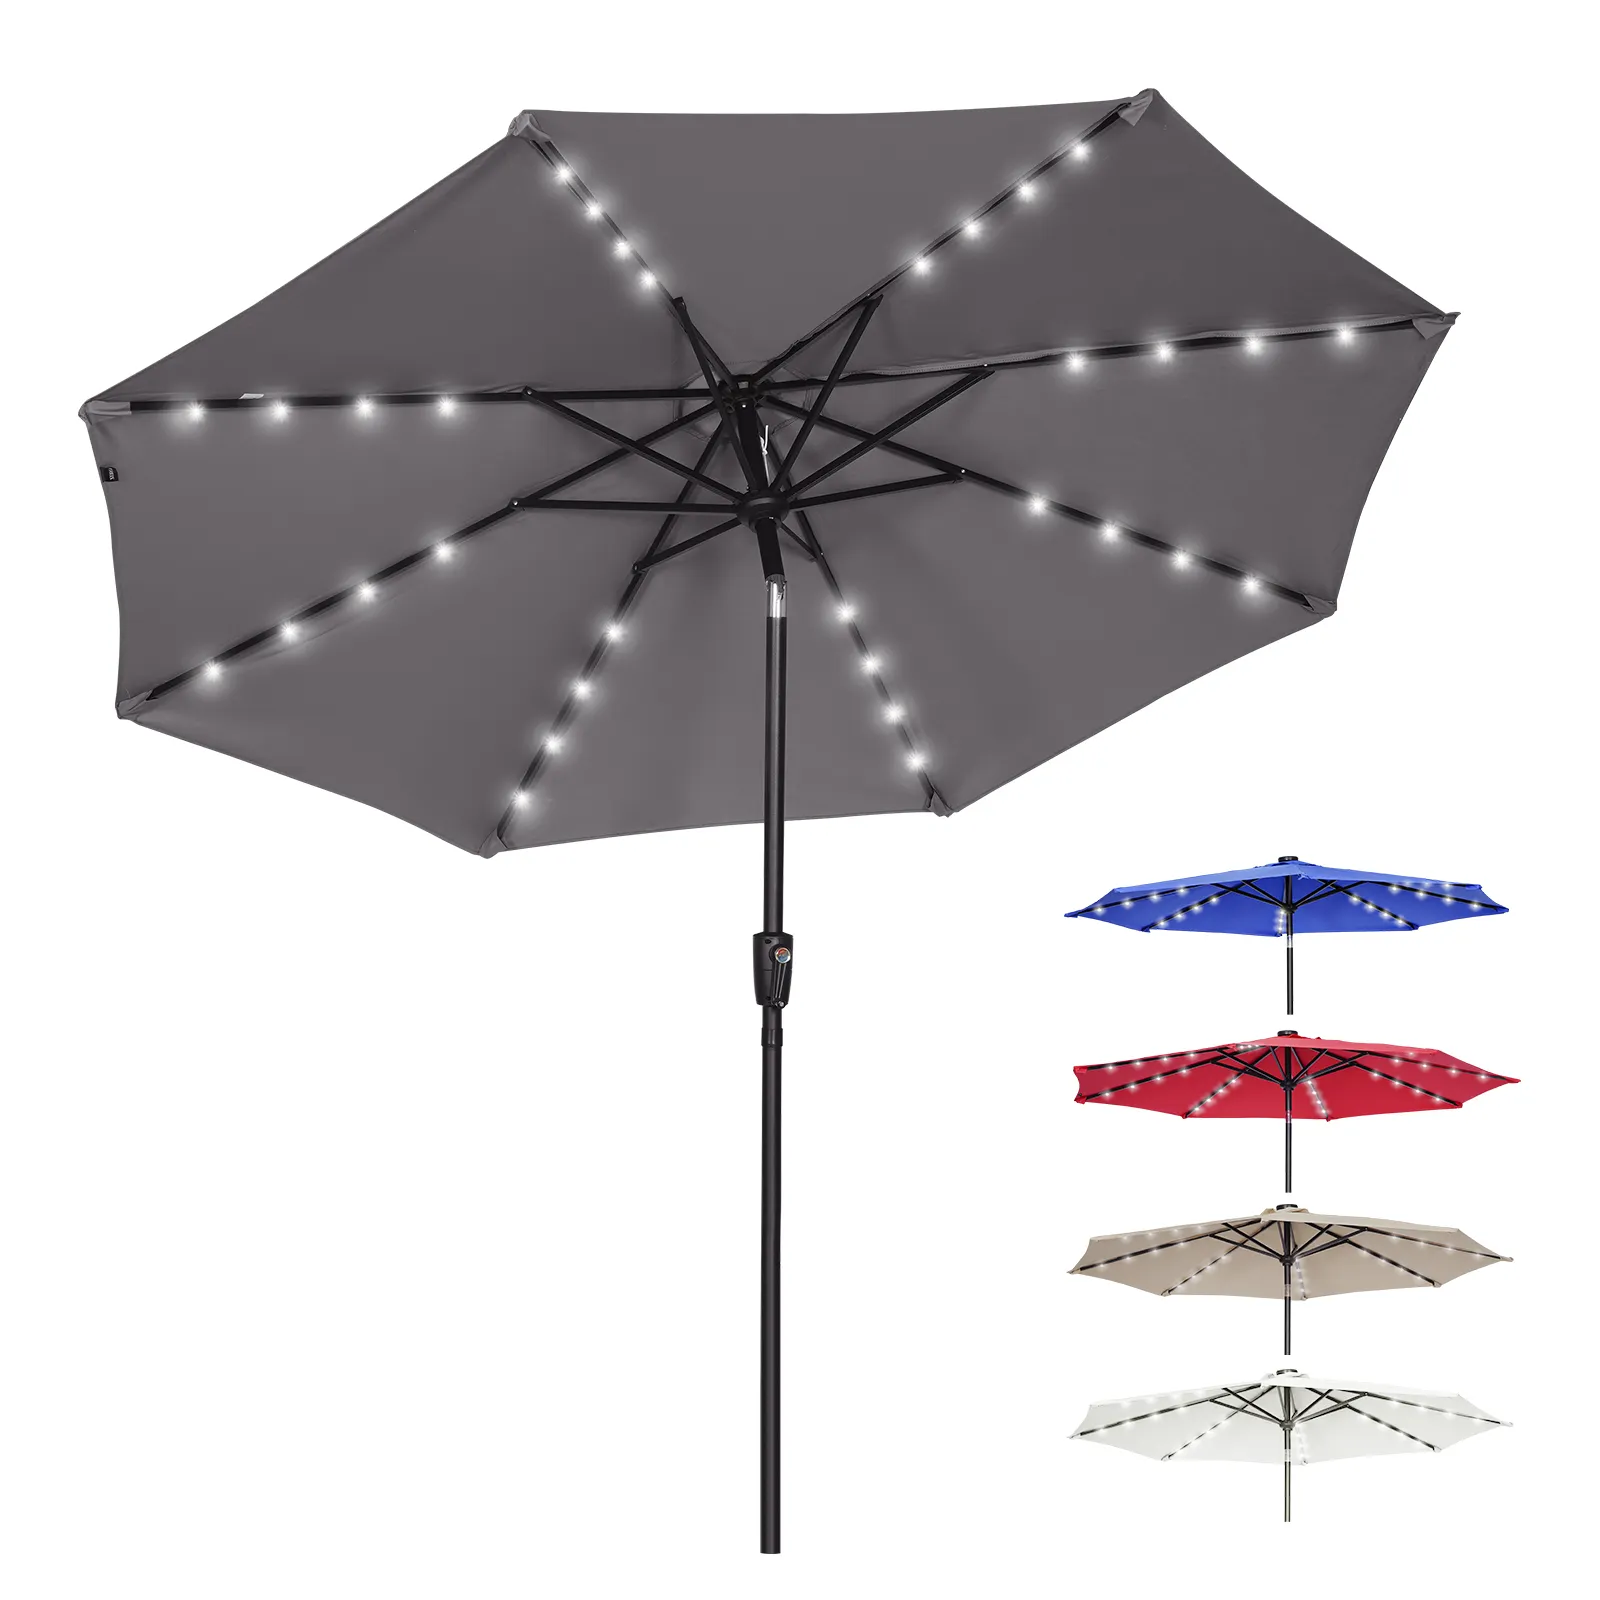 Piscina promozionale gigante Led parasole resistente impermeabile pesca ombrelloni solari esterno Patio parasole per il giardino